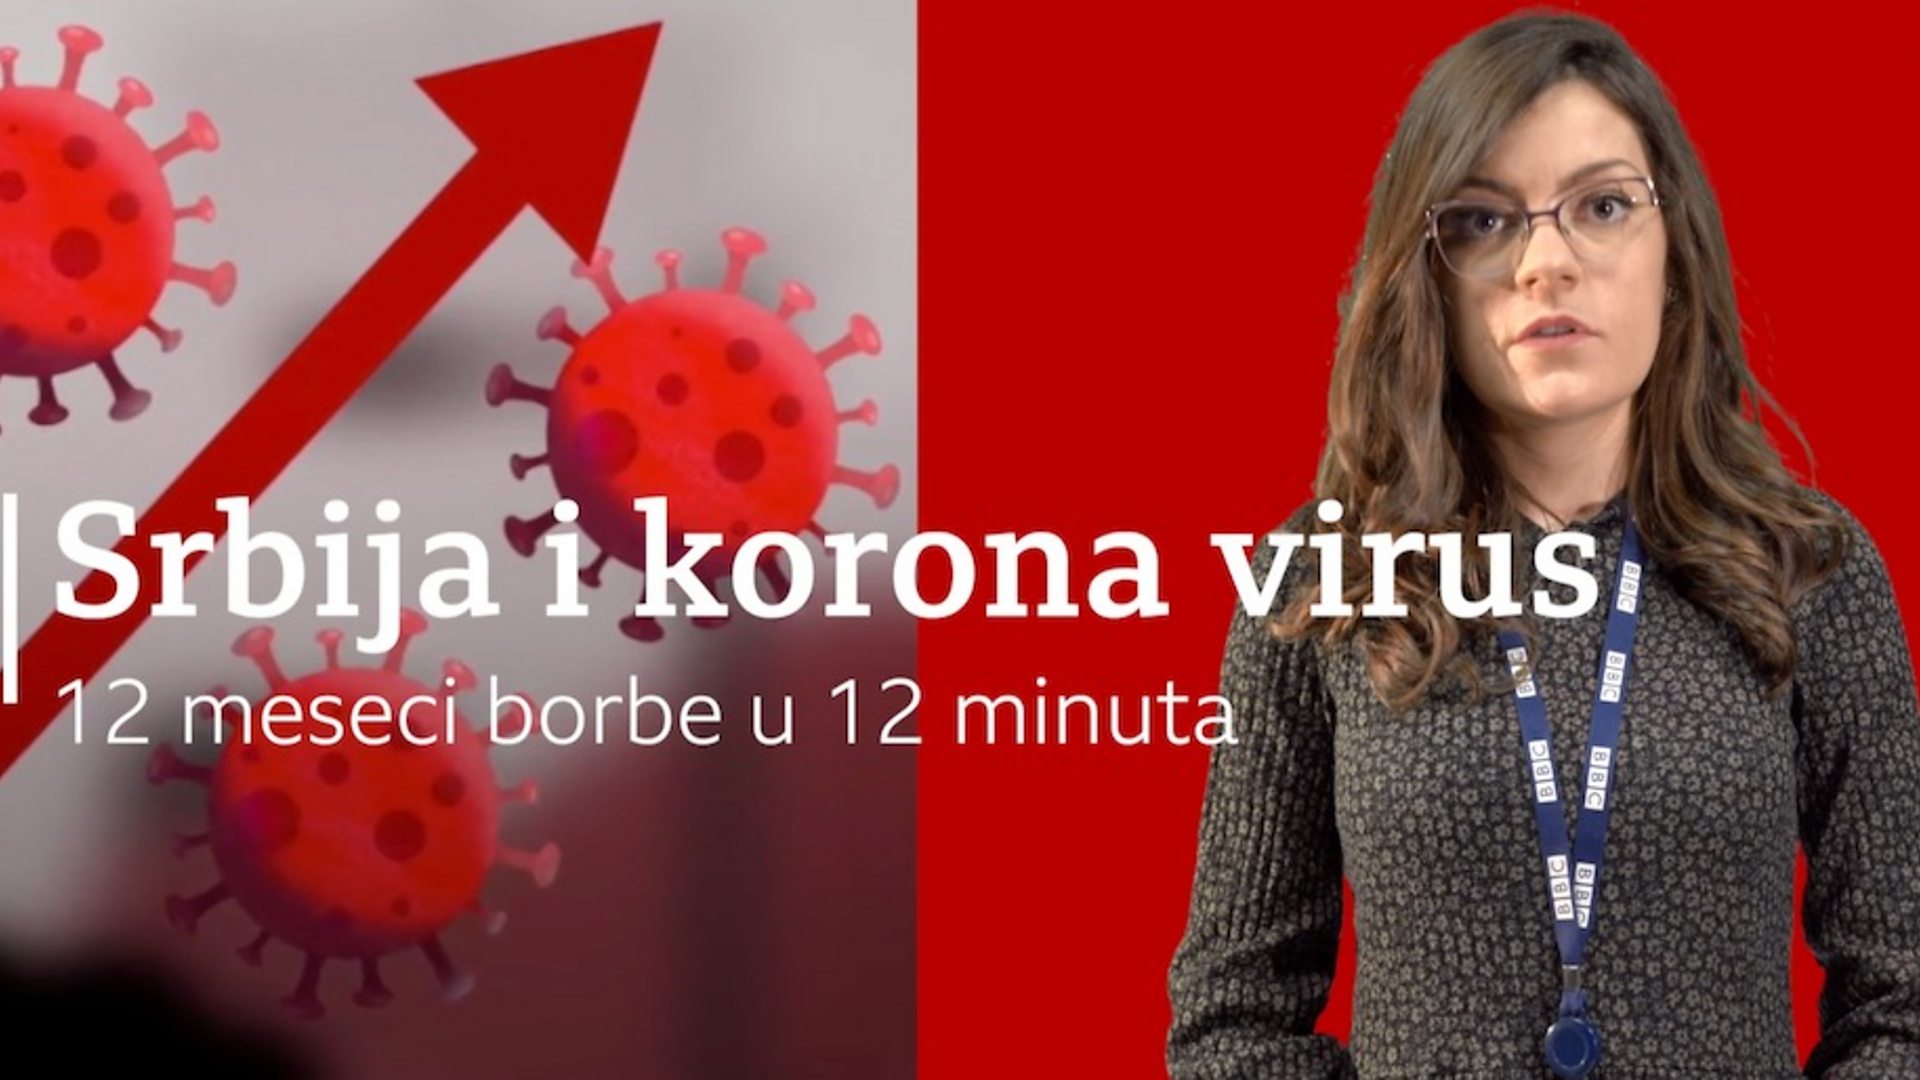 Корона вирус и Србија 2020: 12 месеци борбе у 12 минD